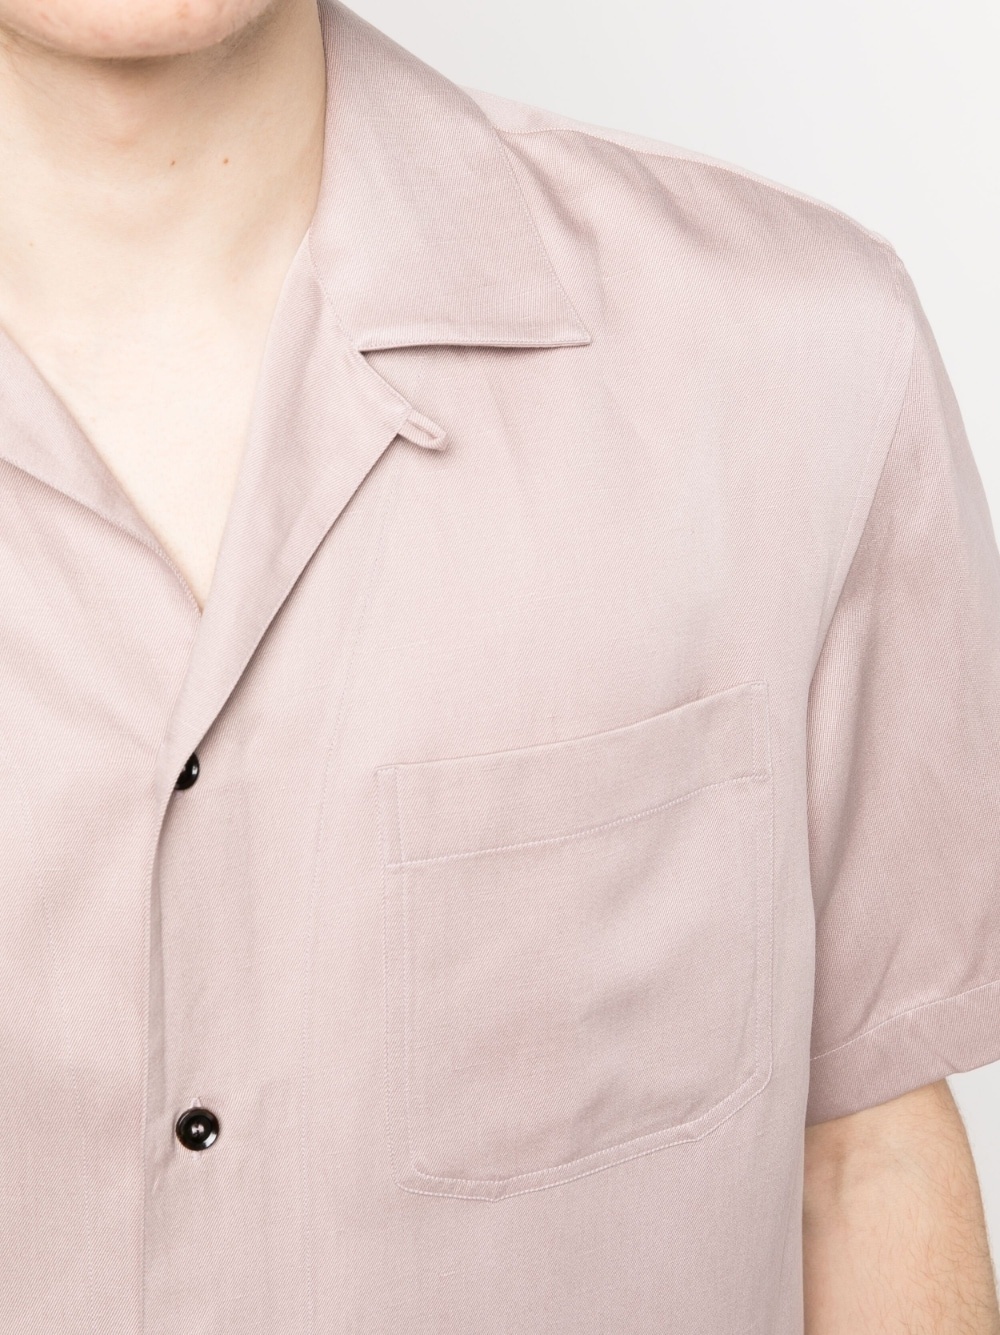 short-sleeved button-up shirt - 5